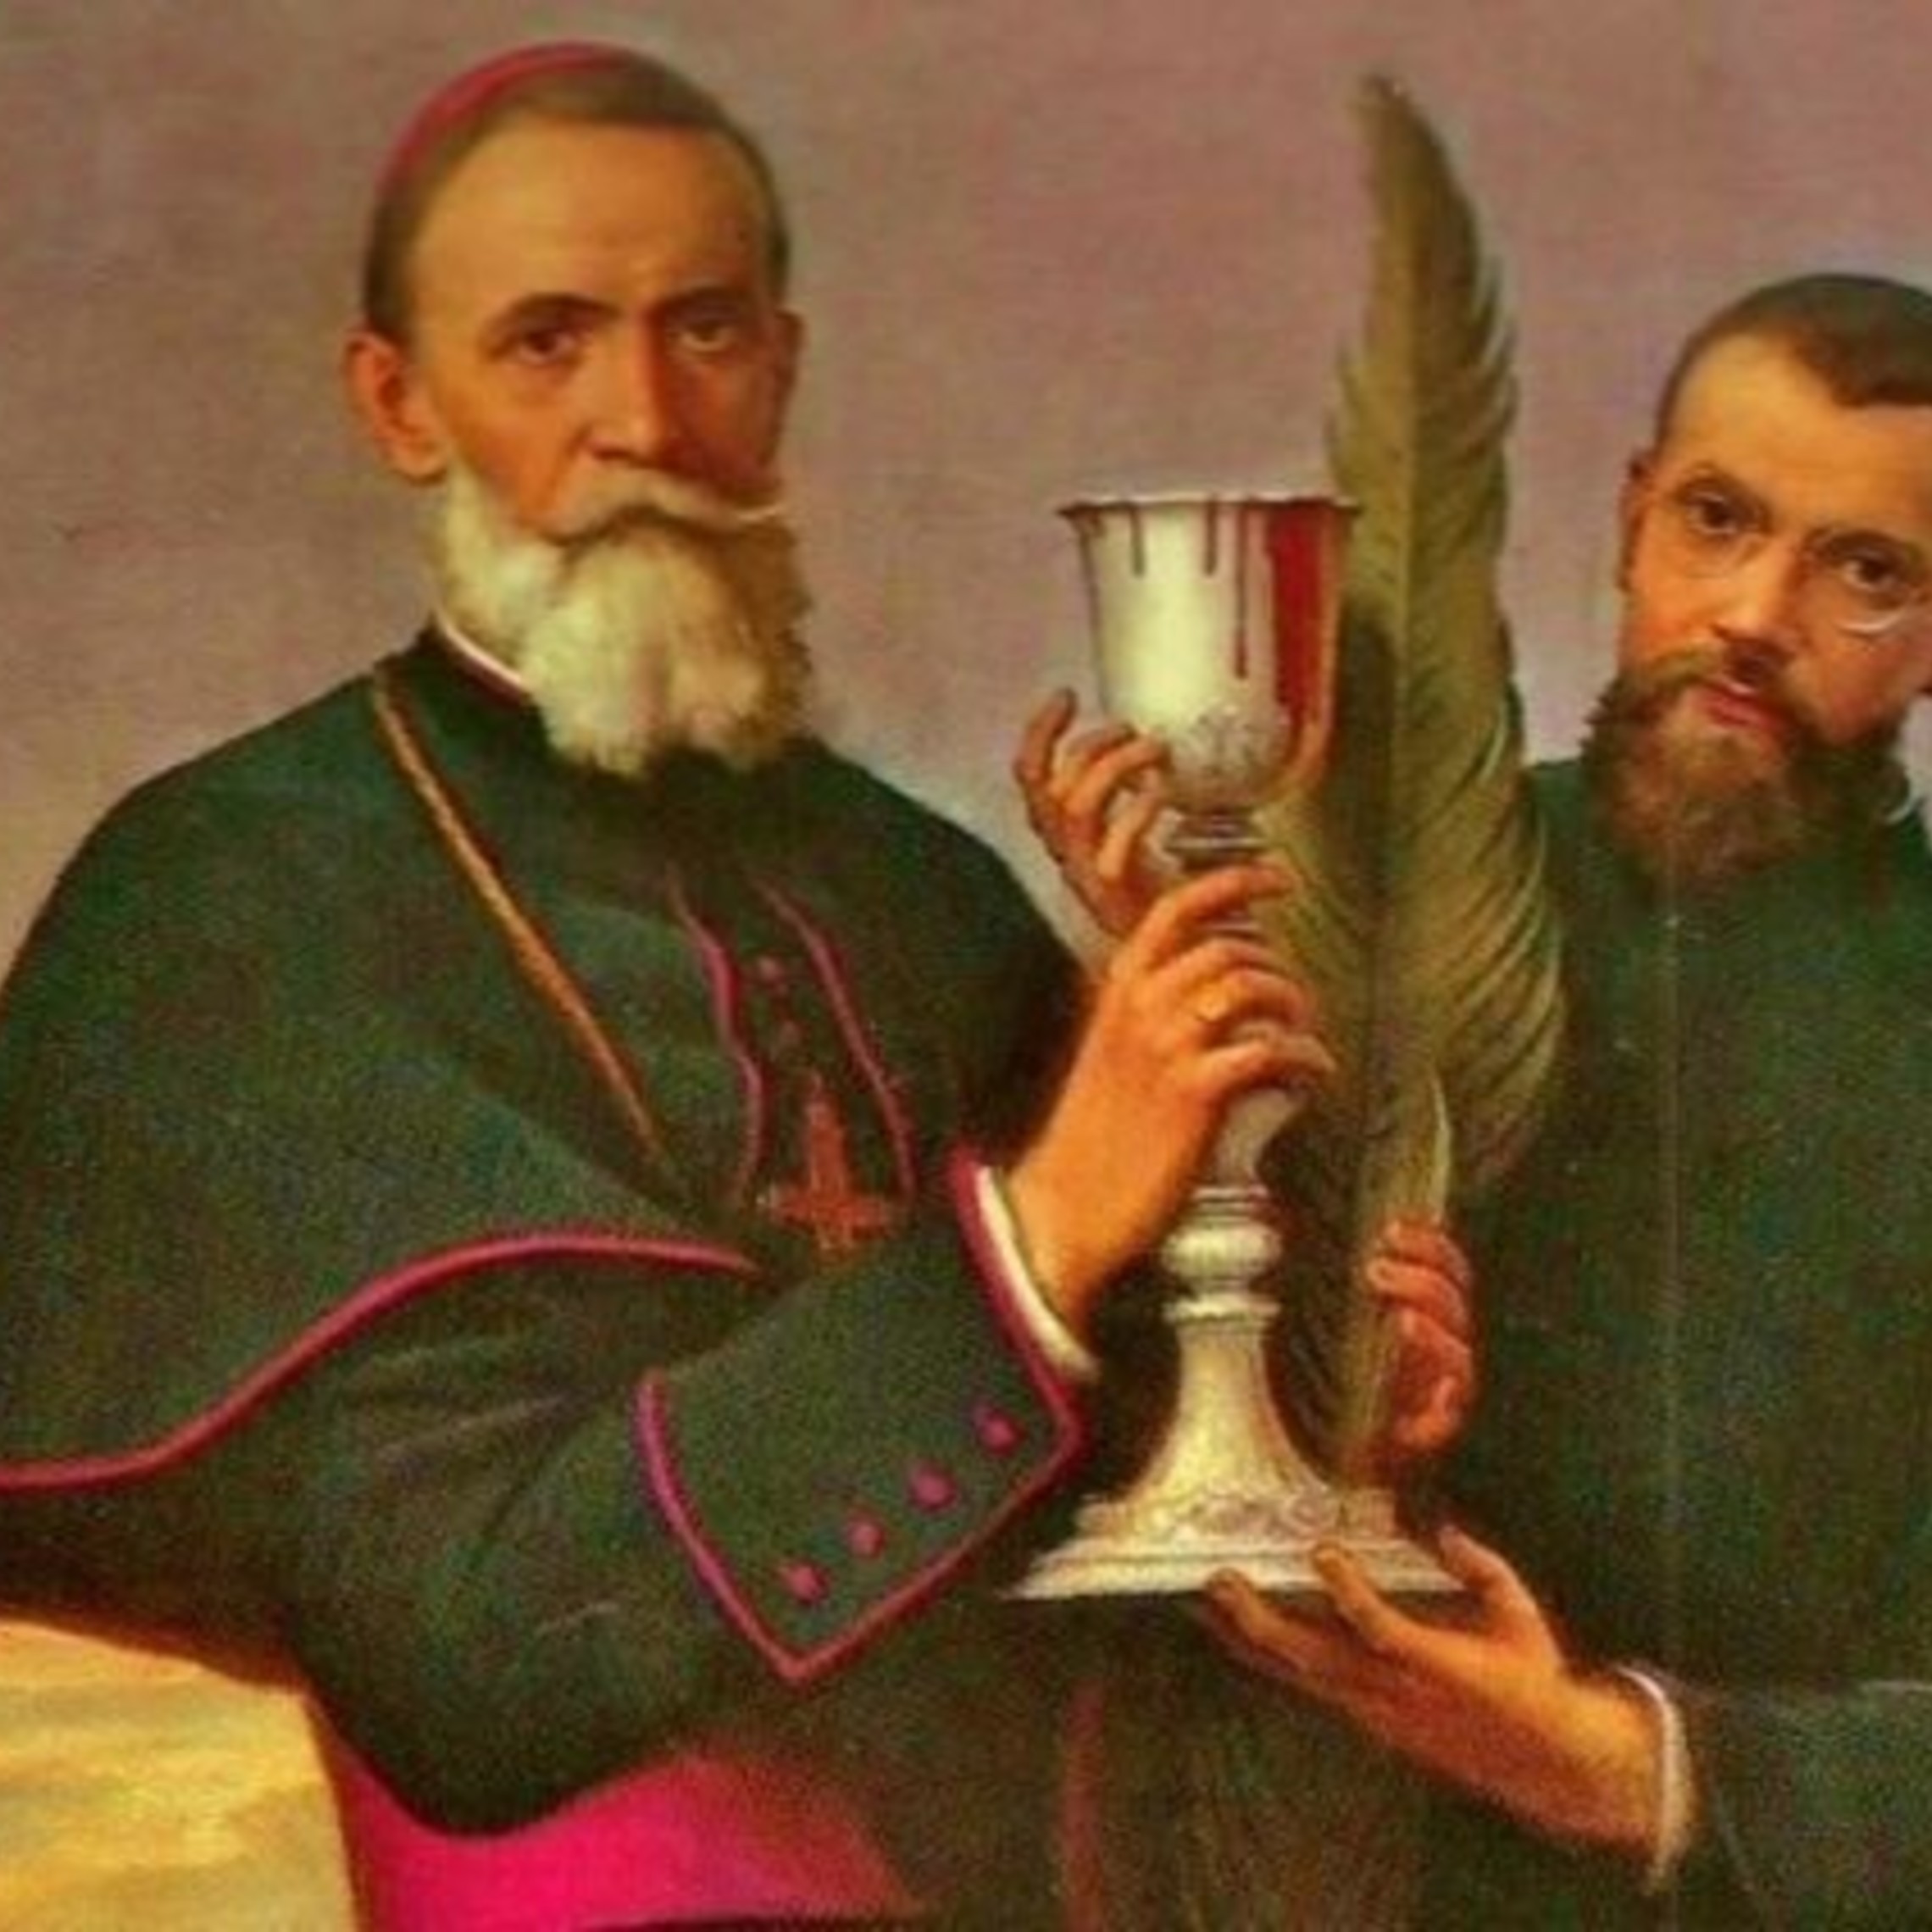 St. Luigi Versiglia and St. Callistus Caravario